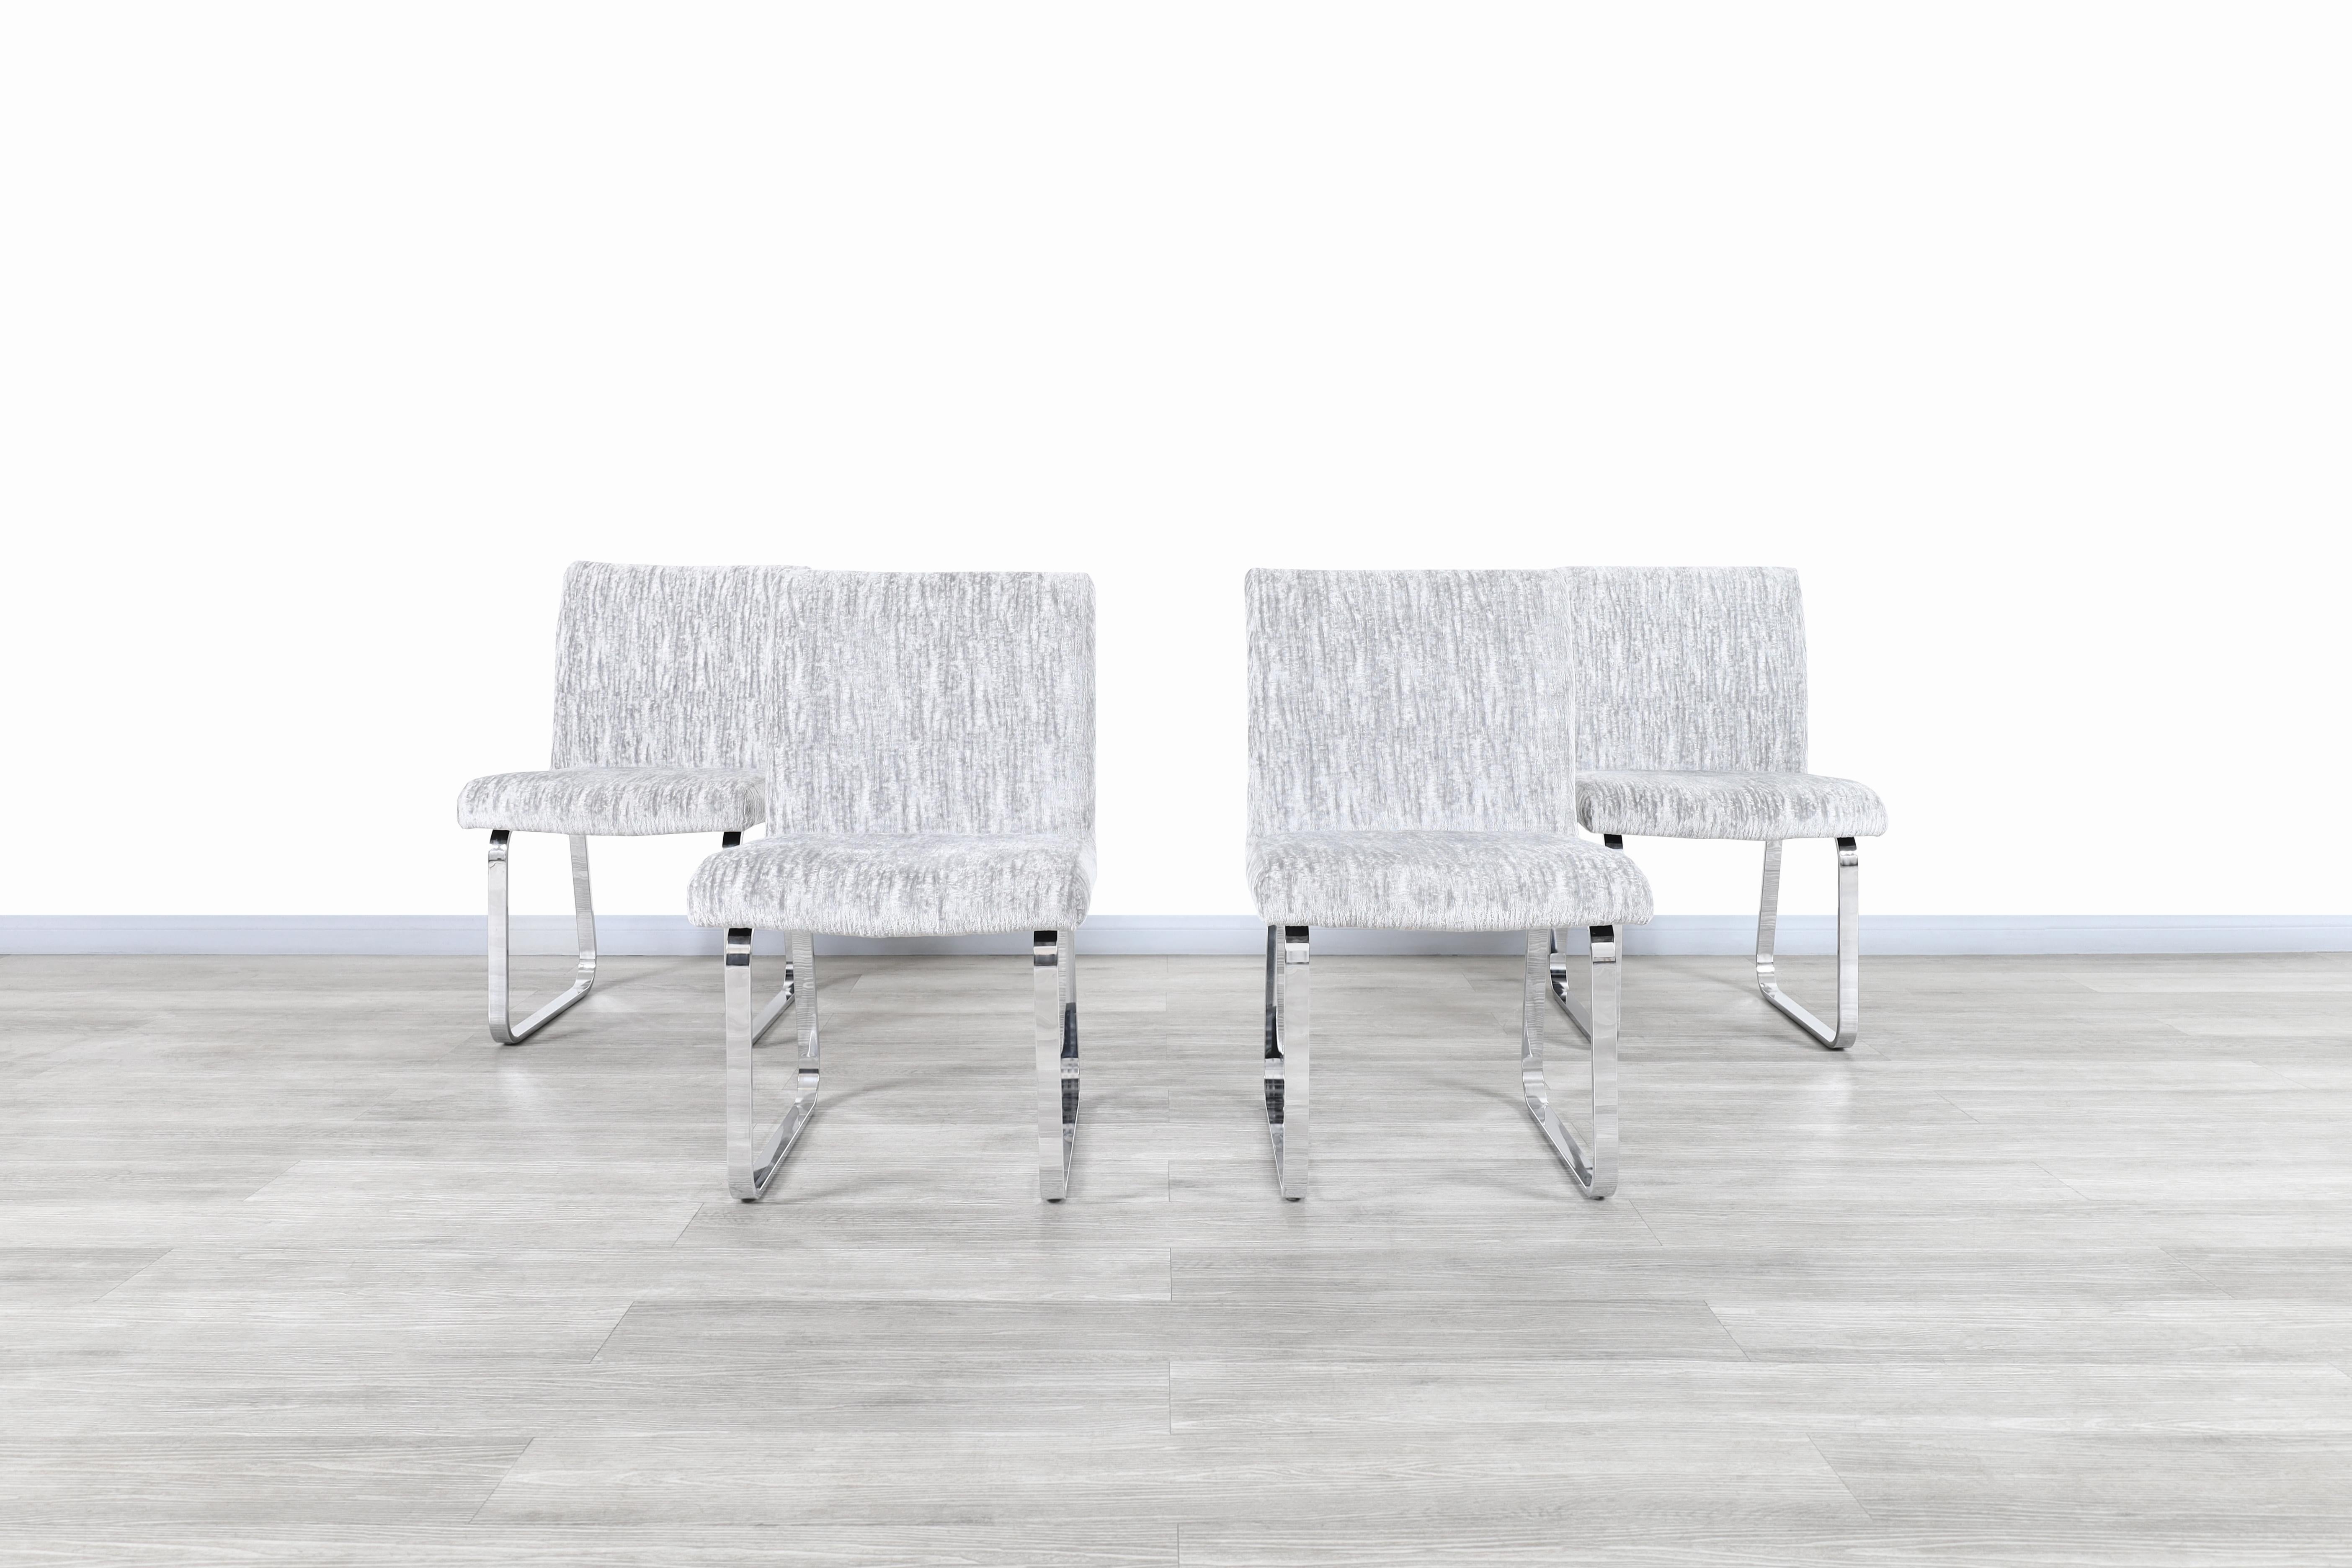 Fabuleuses chaises de salle à manger chromées vintage conçues par DIA (Design Institute of America) et fabriquées aux États-Unis, vers les années 1970. Ces chaises s'inspirent des modèles emblématiques du célèbre designer Milo Baughman. Chaque